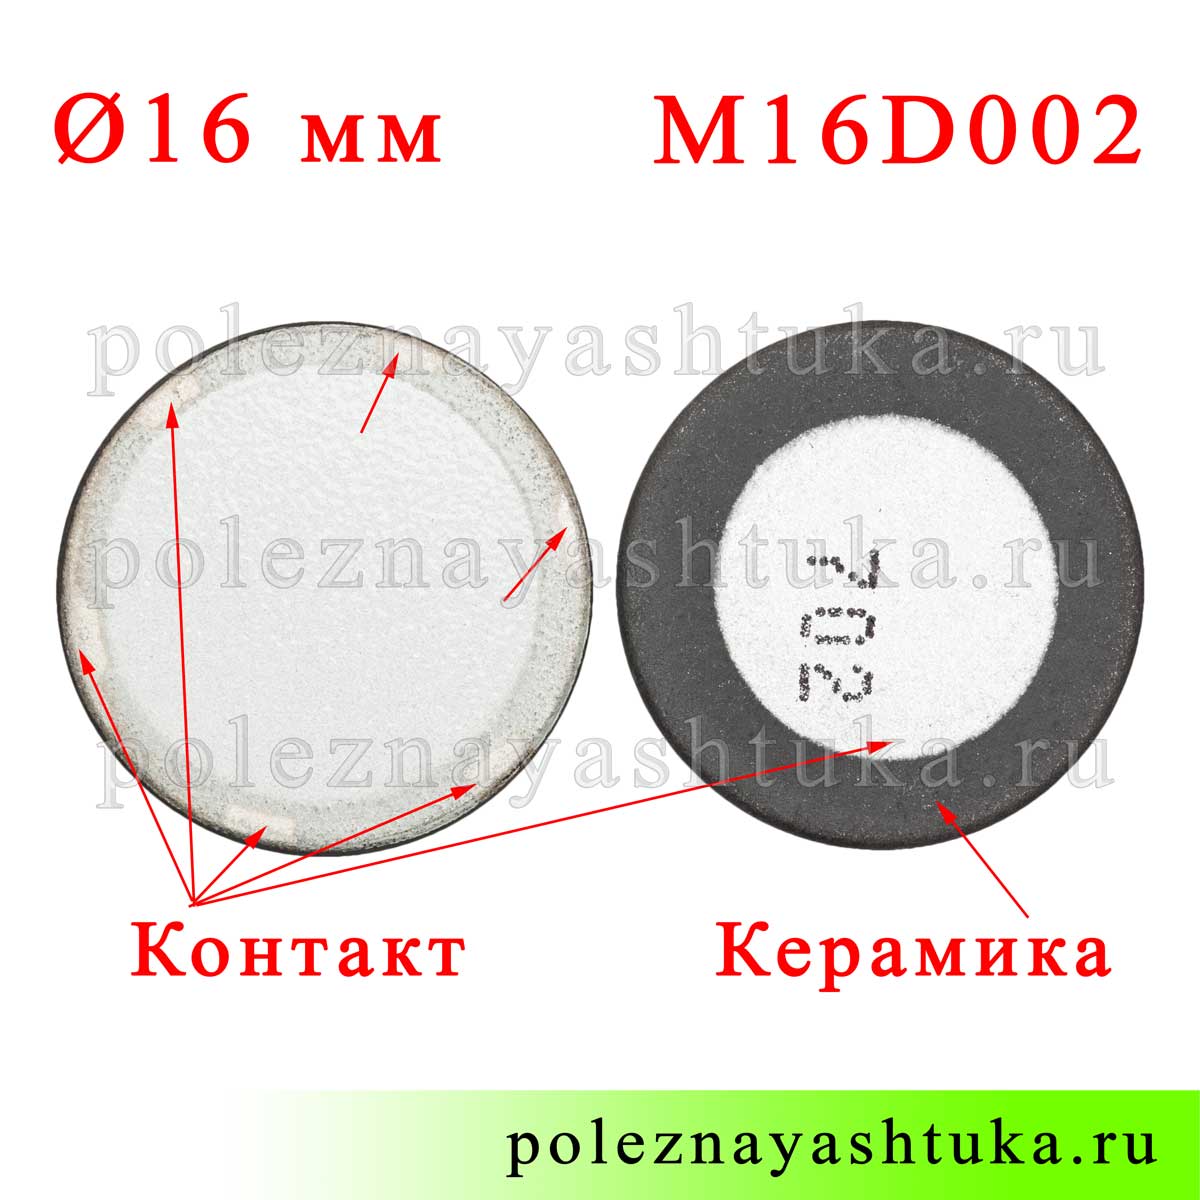 m16d002c--zapchast-dlya-uvlazhnitelya-vozduha-ultrazvukovoj-ehlement-dlya-remonta-16-mm-besprovodnaya